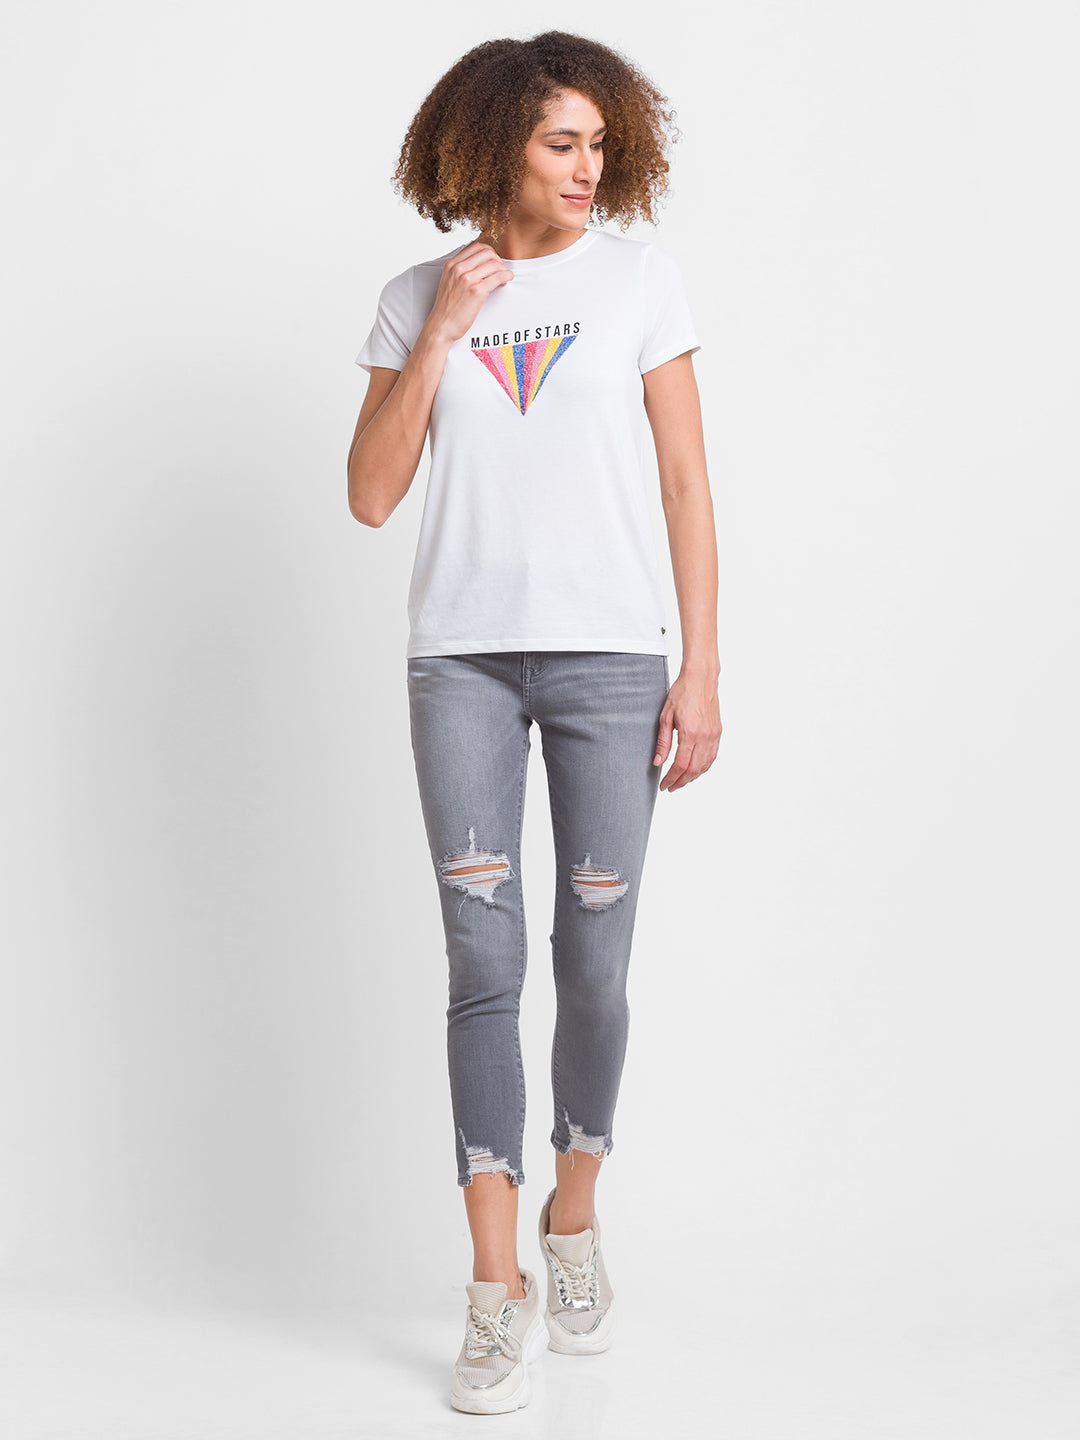 Spykar Light Grey Lycra Super Skinny Ankle Length Jeans For Women (Alexa)